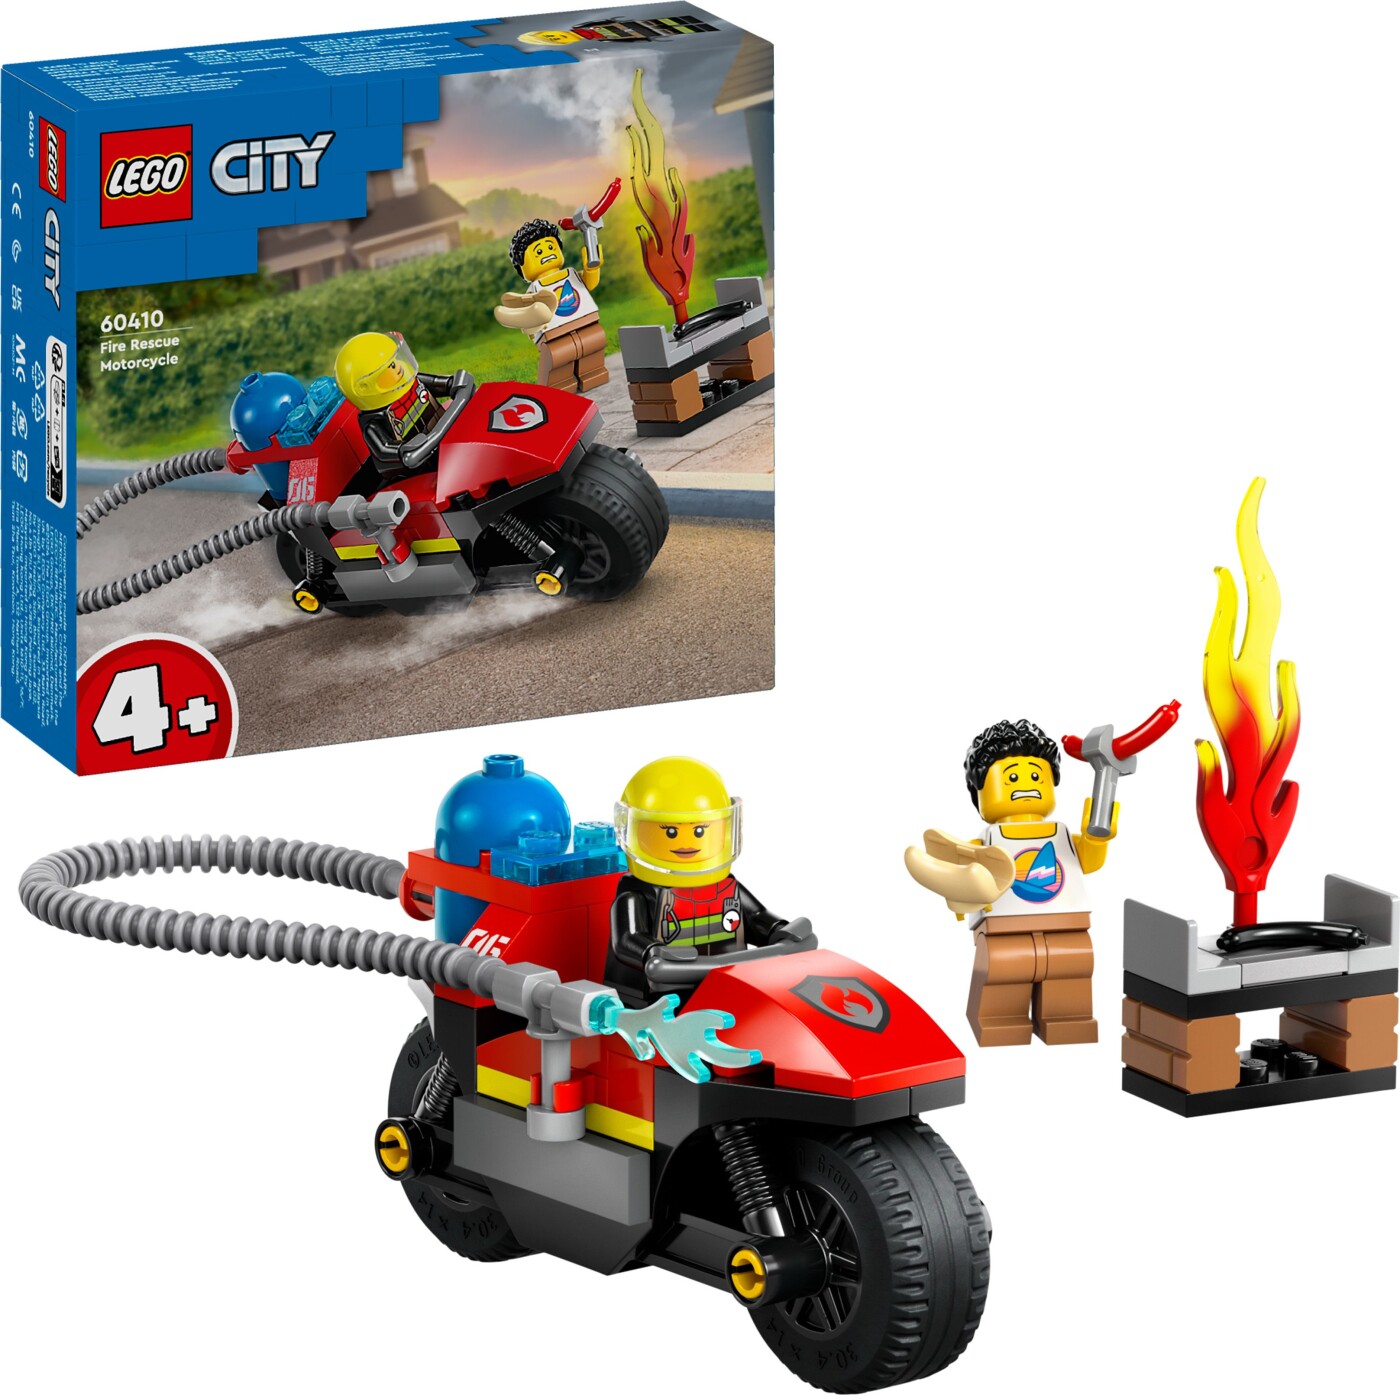 Billede af Lego City - Brandslukningsmotorcykel - 60410